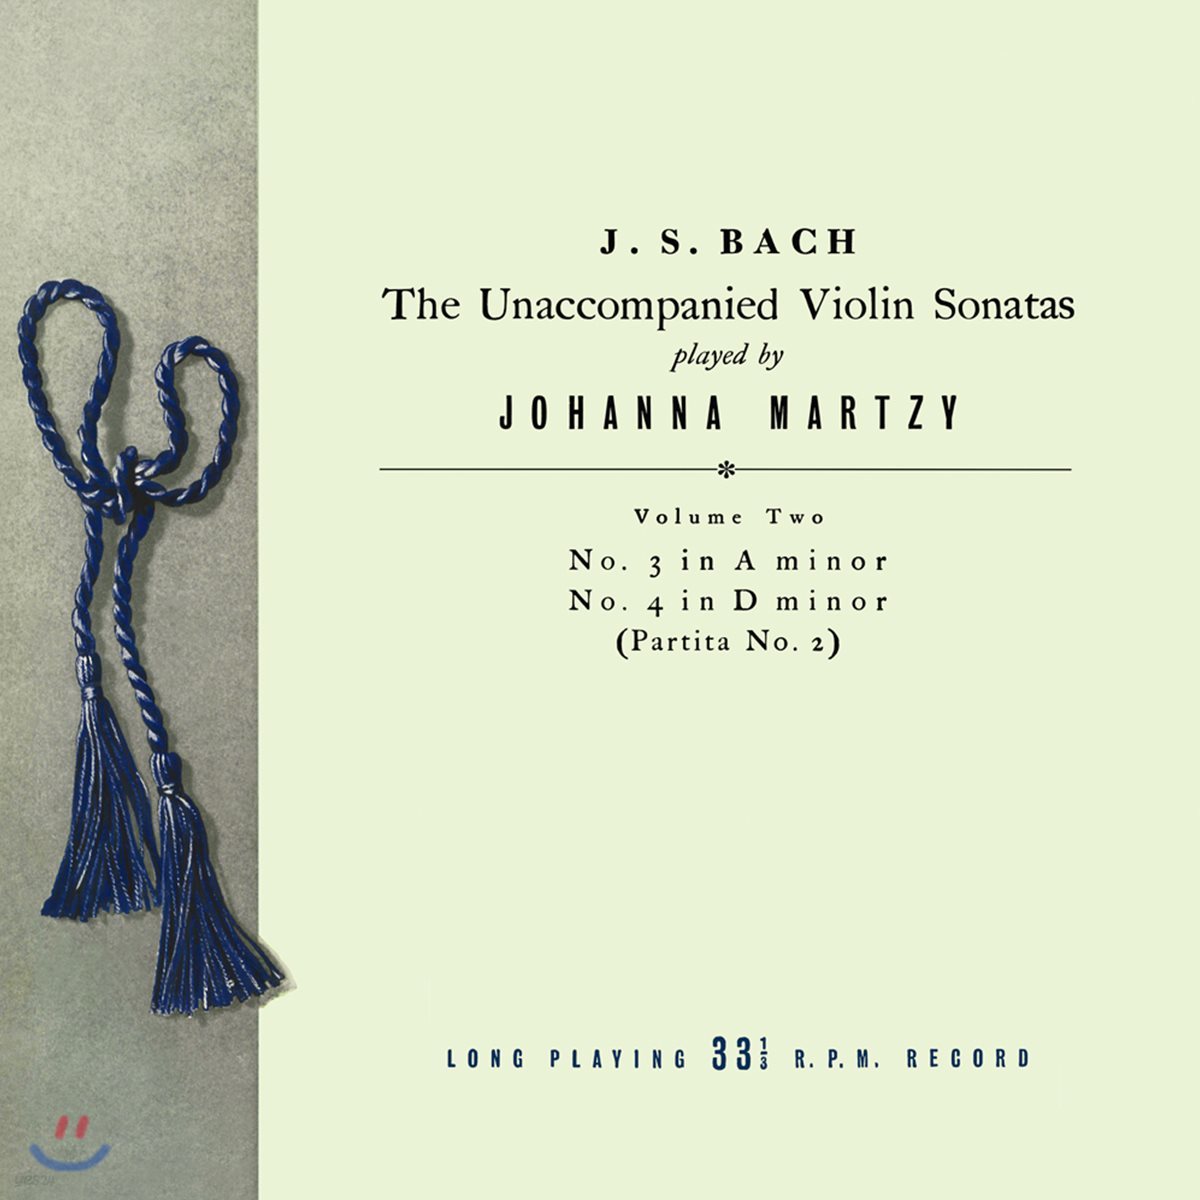 요한나 마르치 - 바흐: 무반주 바이올린 소나타 &amp; 파르티타 2집 BWV1003 &amp; 1004 (Johanna Martzy - J.S. Bach: The Unaccompanied Violin Sonatas Volume Two) [LP]